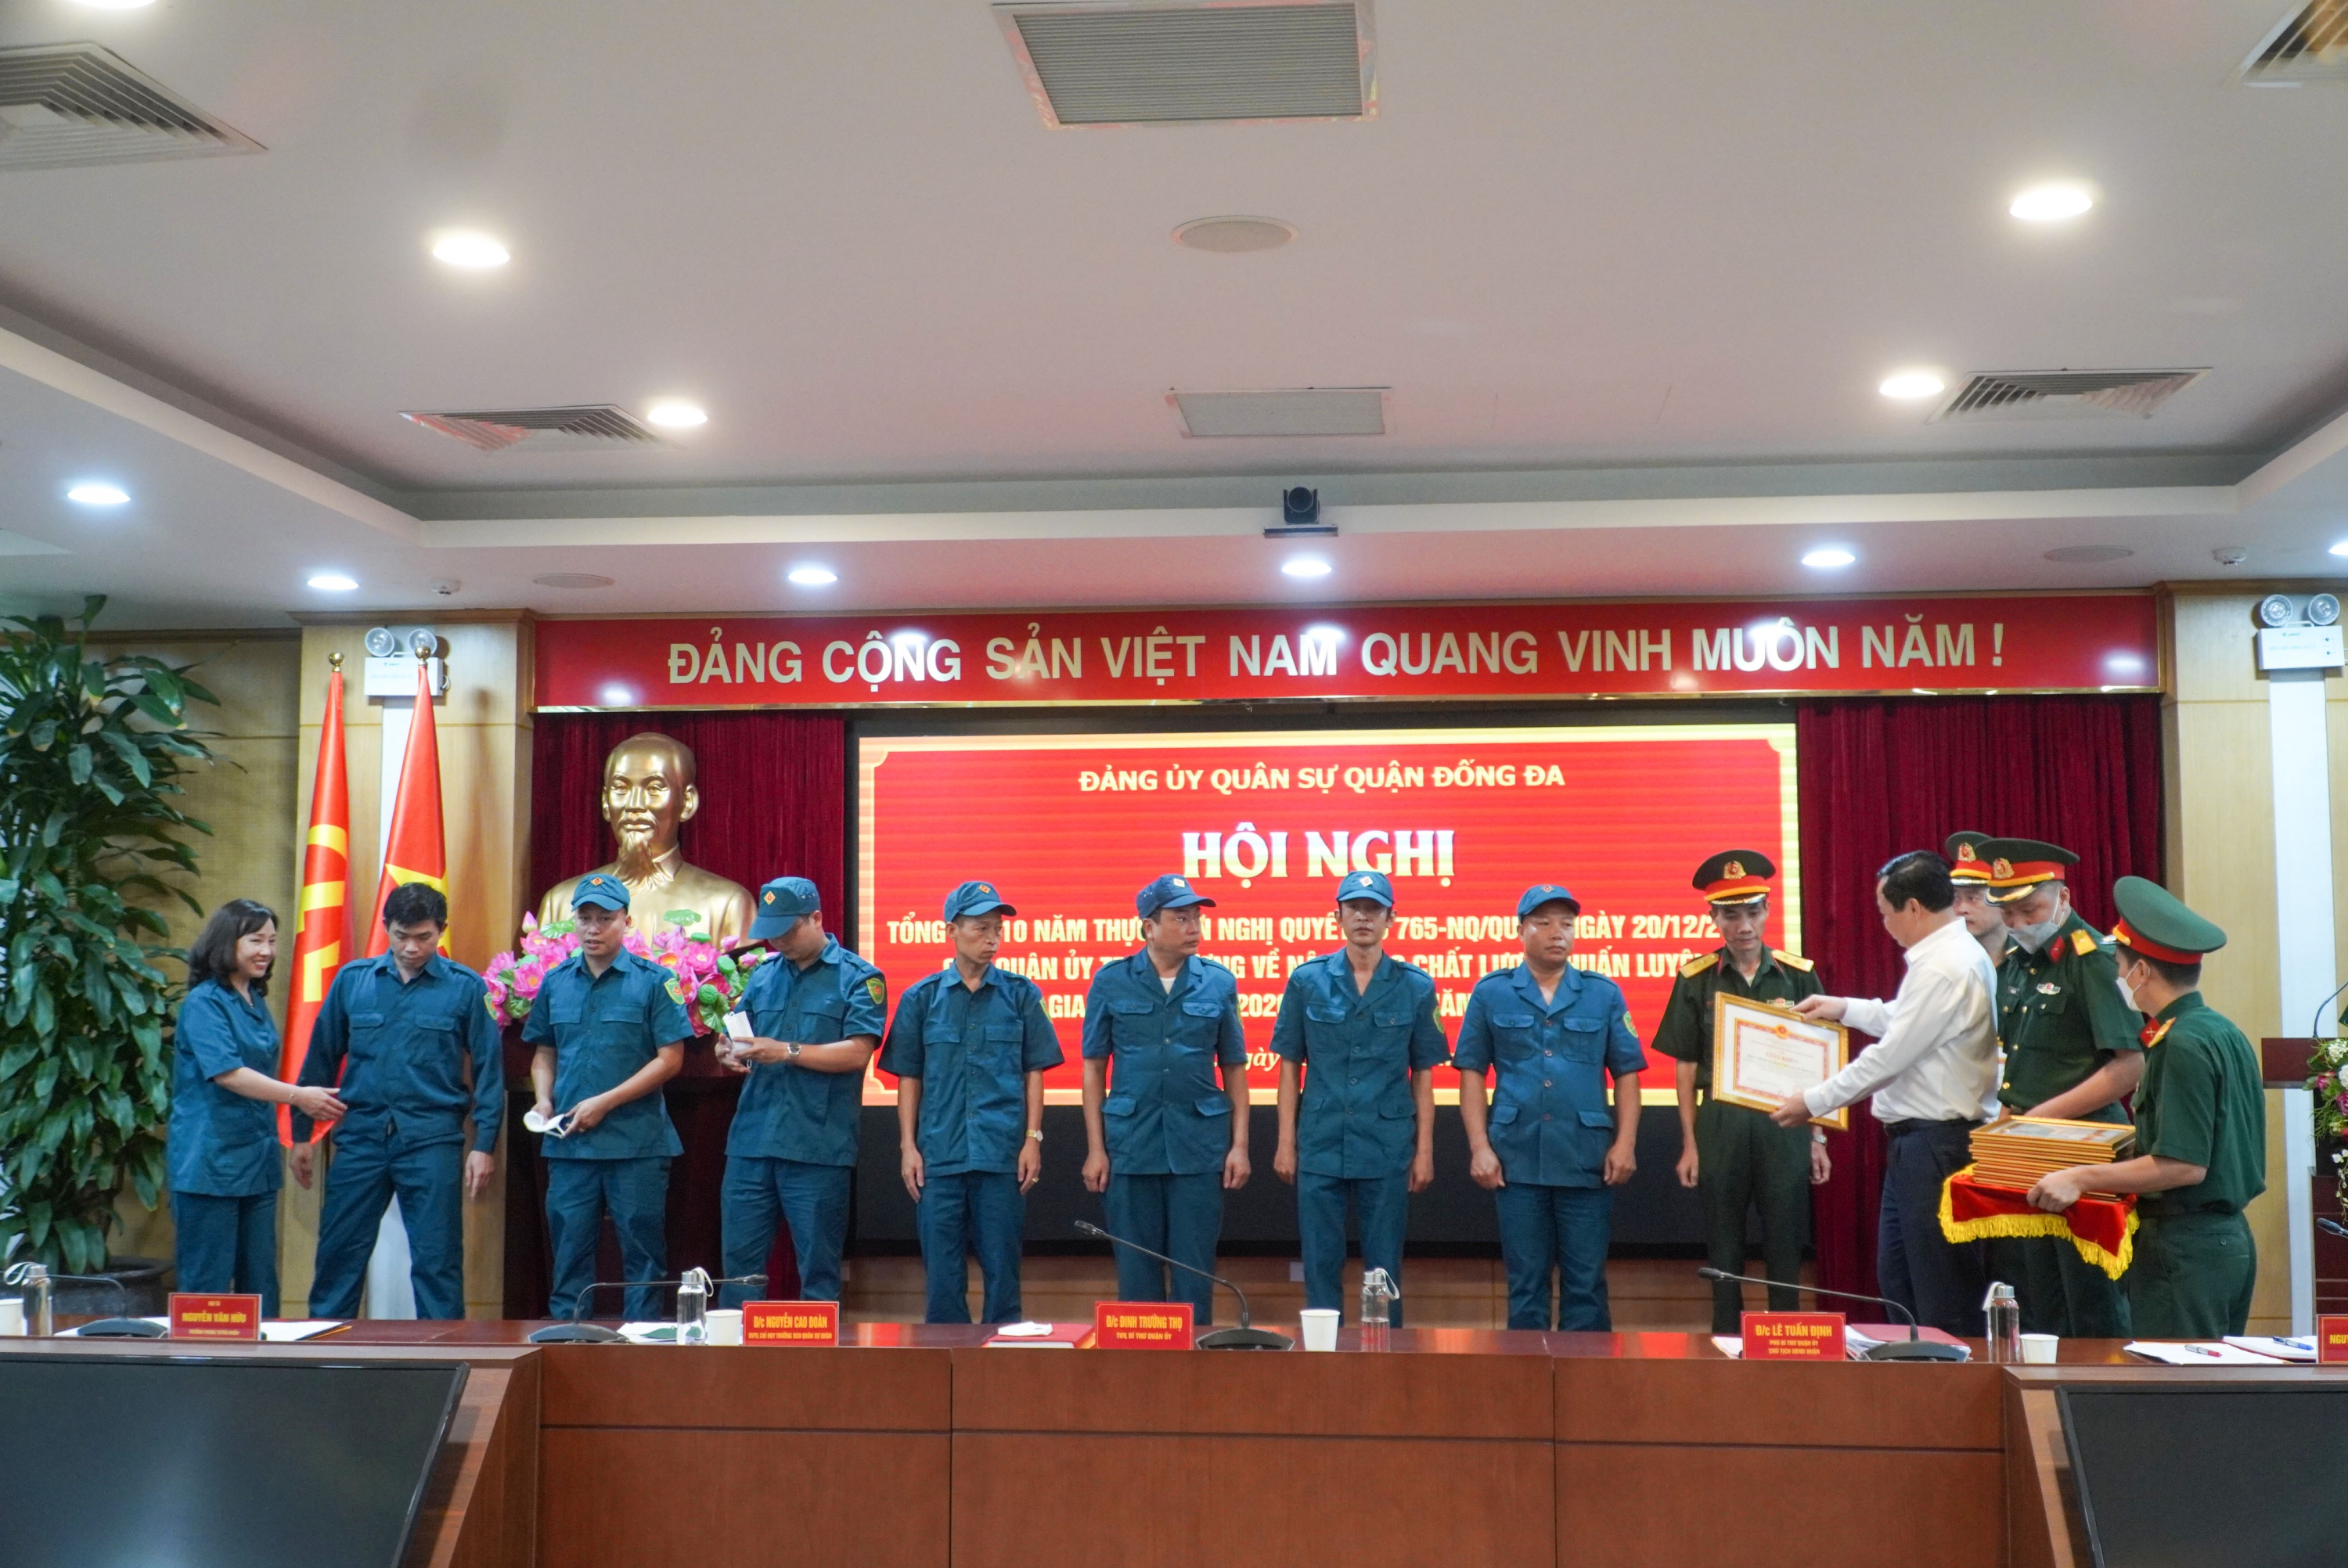 Trường CĐN Công nghiệp Hà Nội vinh dự được nhận khen thưởng trong công tác thực hiện Nghị quyết 765-NQ/QUTW ngày 10/12/2012 của Quân ủy Trung ương về nâng cao chất lượng huấn luyện giai đoạn 2013-2020